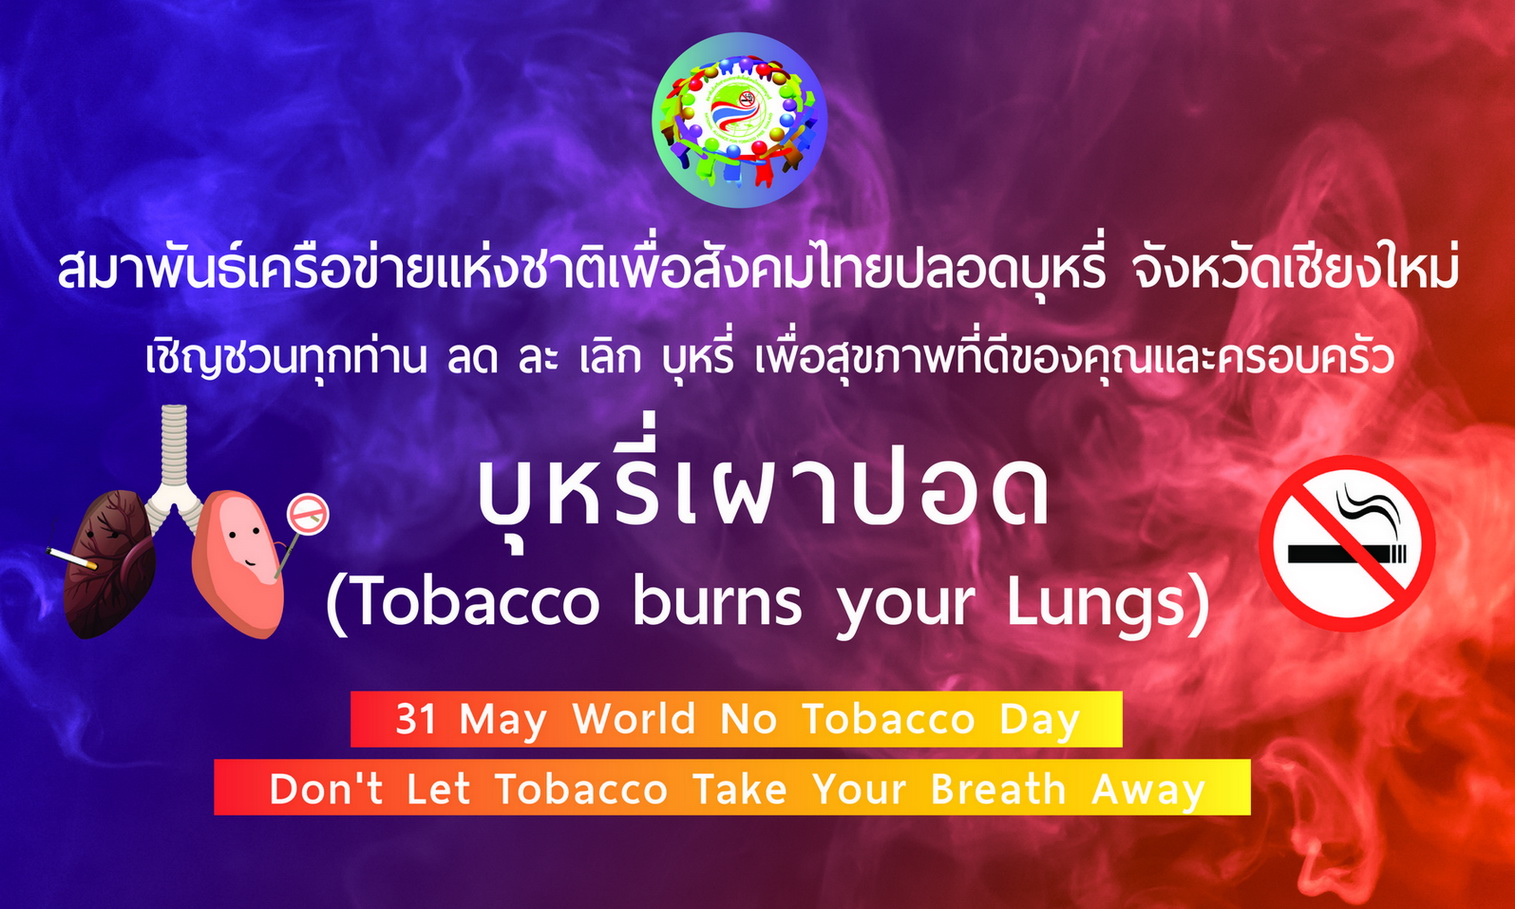 
	รณรงค์ ลด ละ เลิกบุหรี่ เนื่องในวันงดสูบบุหรี่โลก 2562
